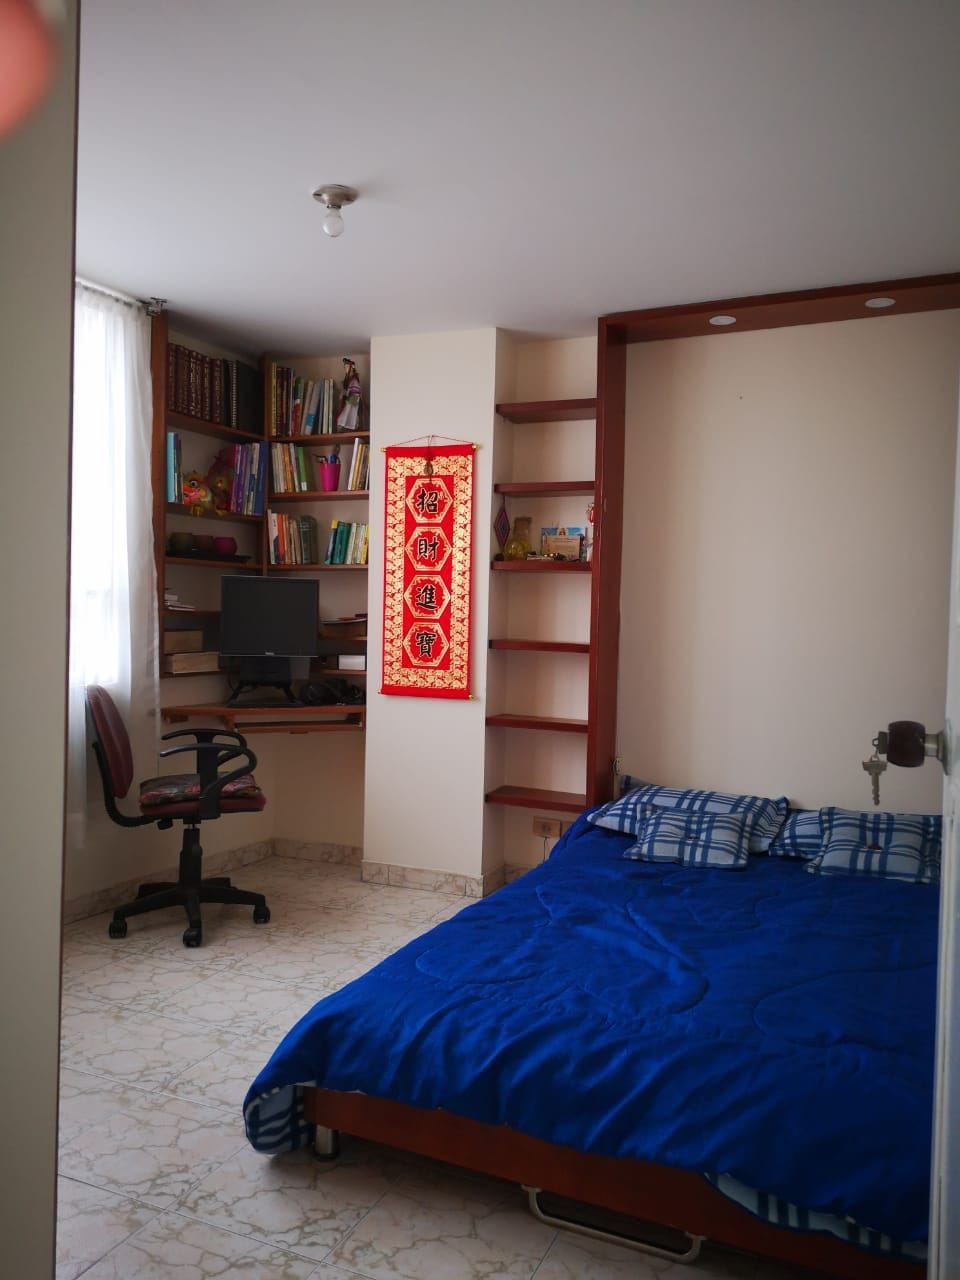 Comfortable and nice room, Cómodo y hermoso cuarto